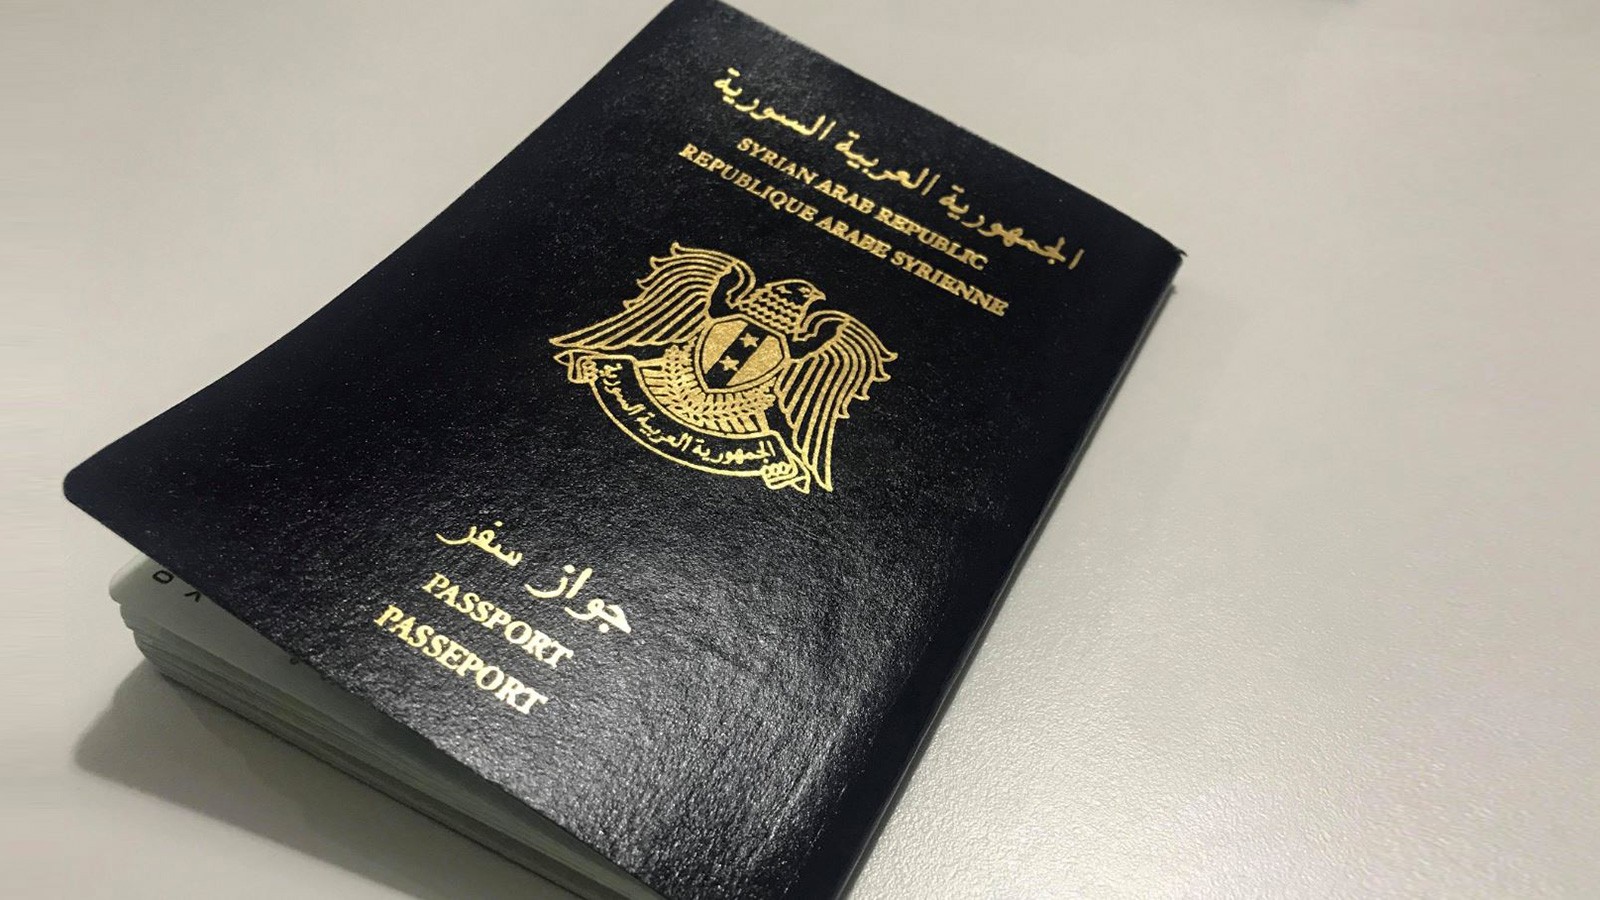 المستندات المطلوبة لحجز جواز سفر سوري وطريقة التسجيل